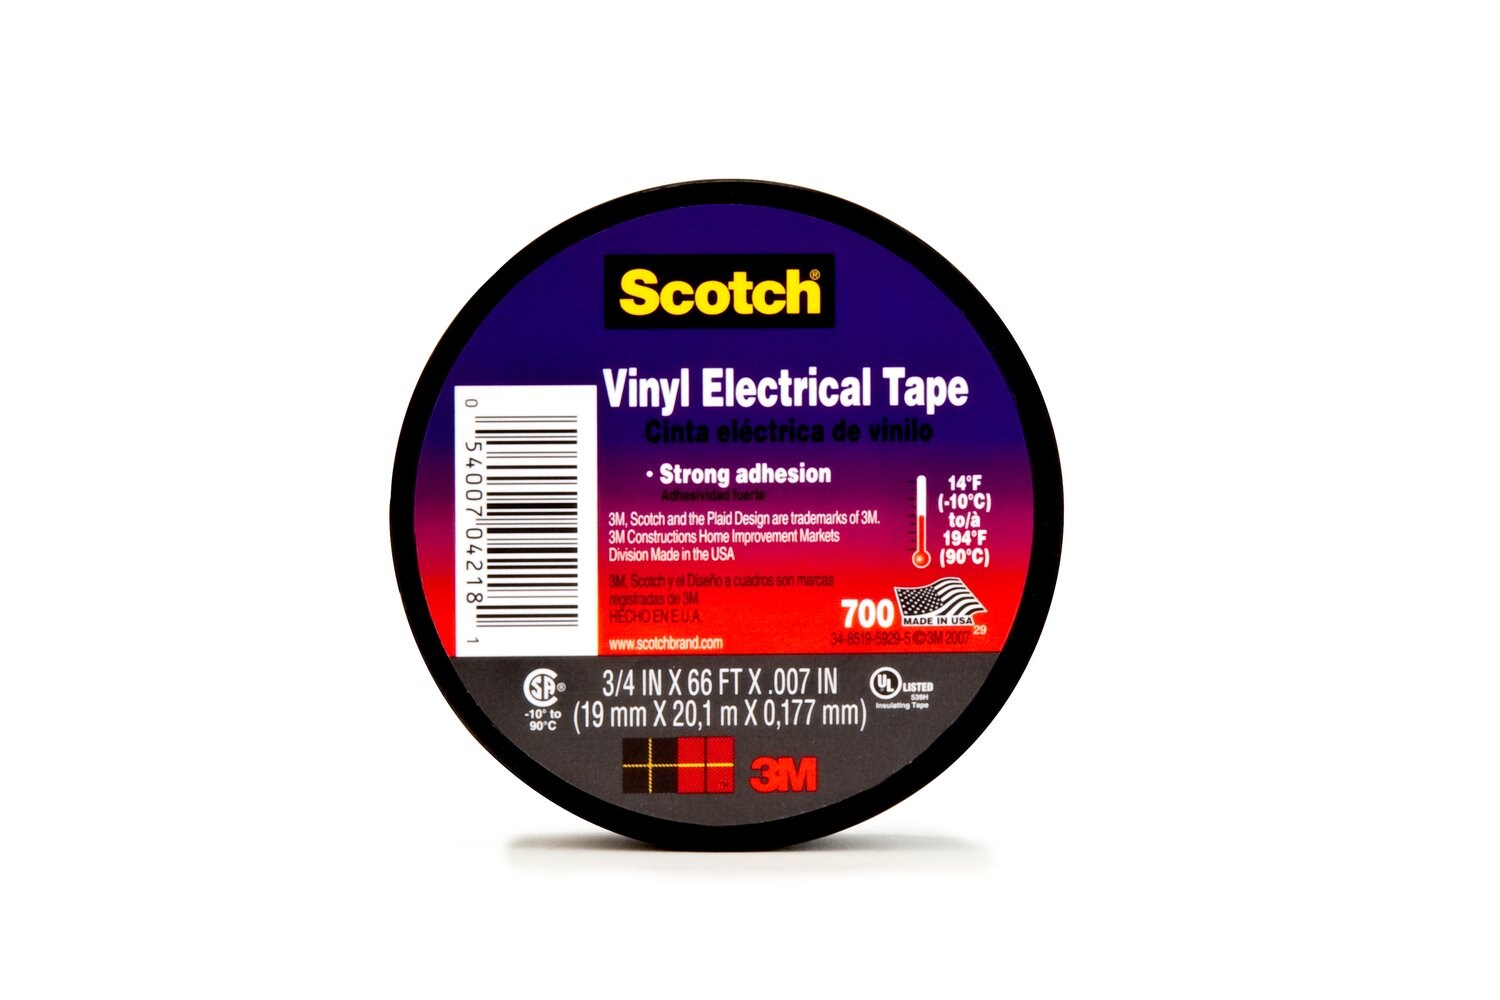 7010397874 - Scotch Vinyl Electrical Tape 700, 2 in x 20 ft, 1 in core, Black, 144
rolls/Case, NO SHRINKWRAP